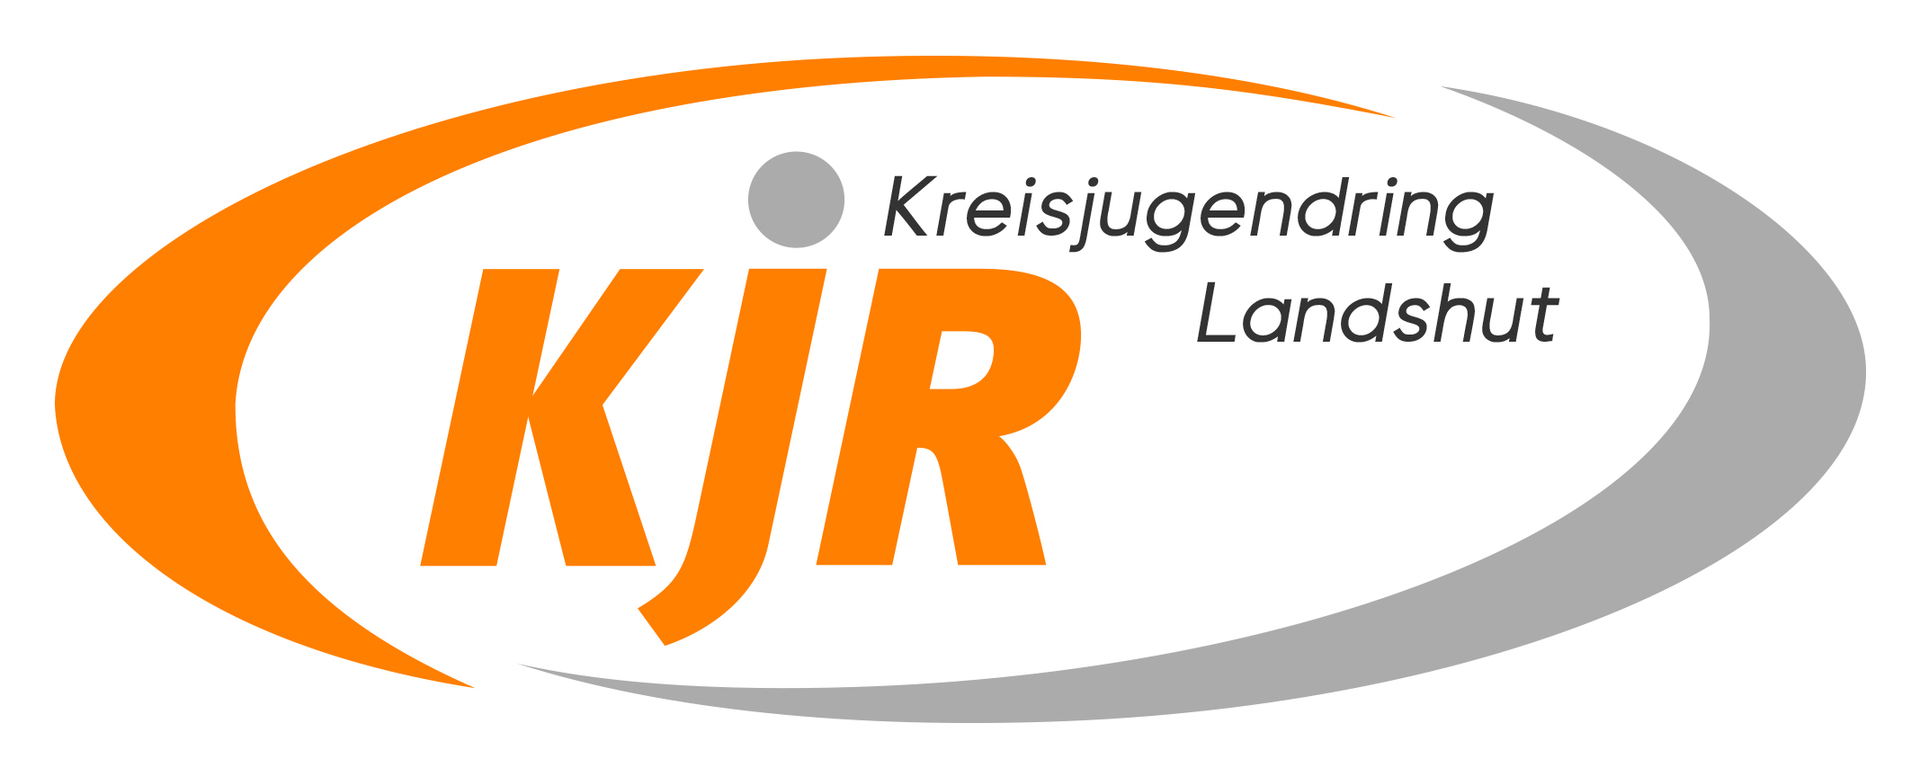 (c) Kjr-landshut.de